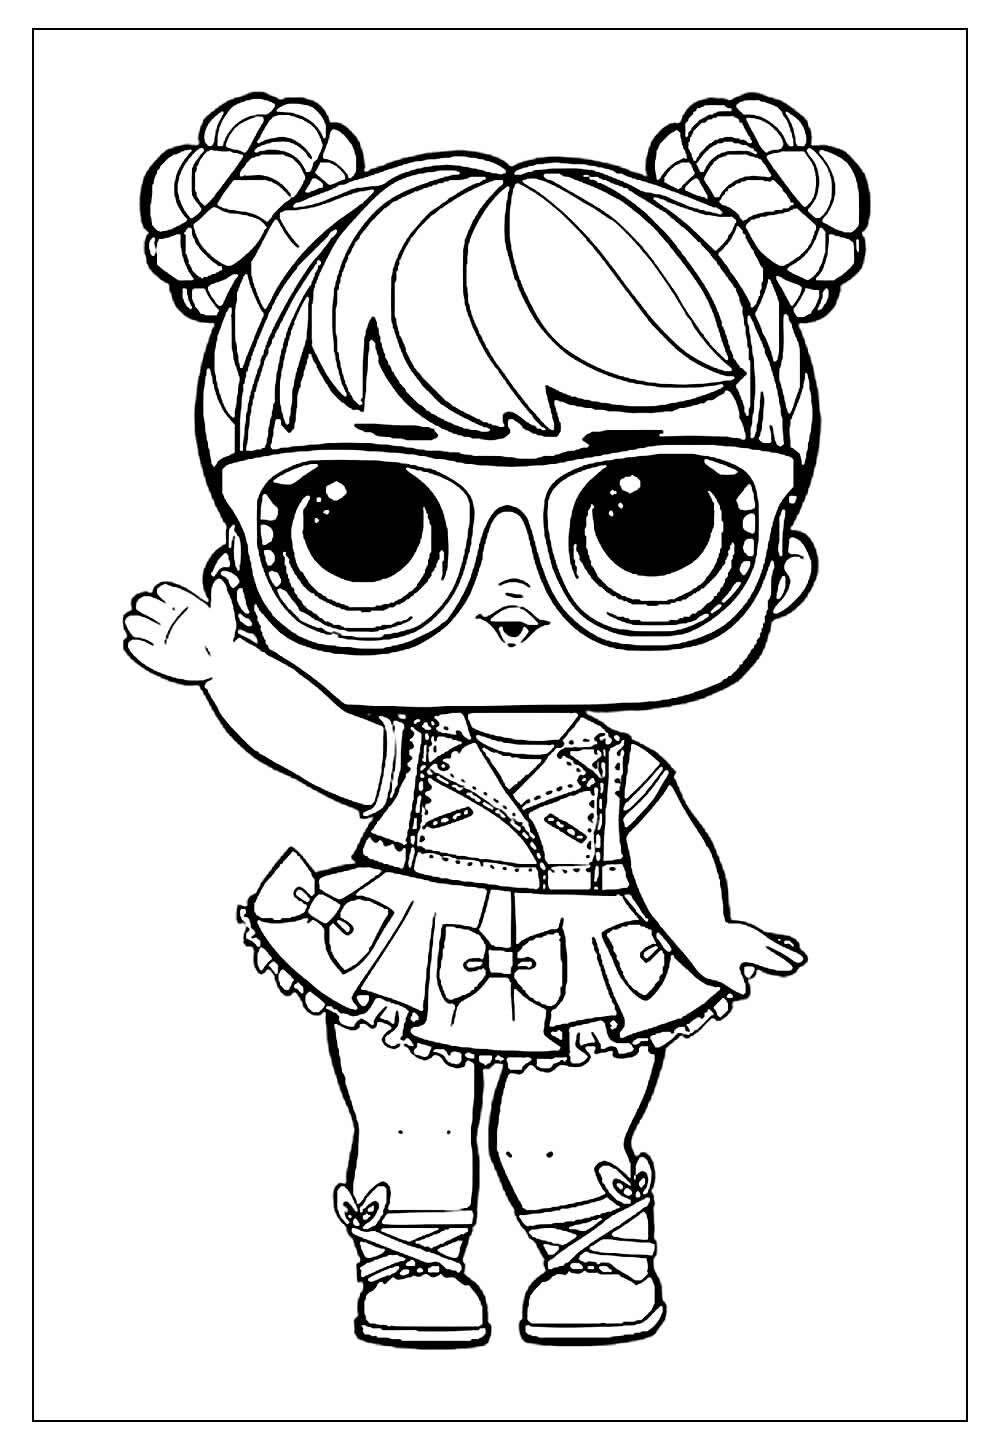 Desenhos da boneca LOL para imprimir e colorir - Página 2 de 2 - Blog Ana  Giovanna